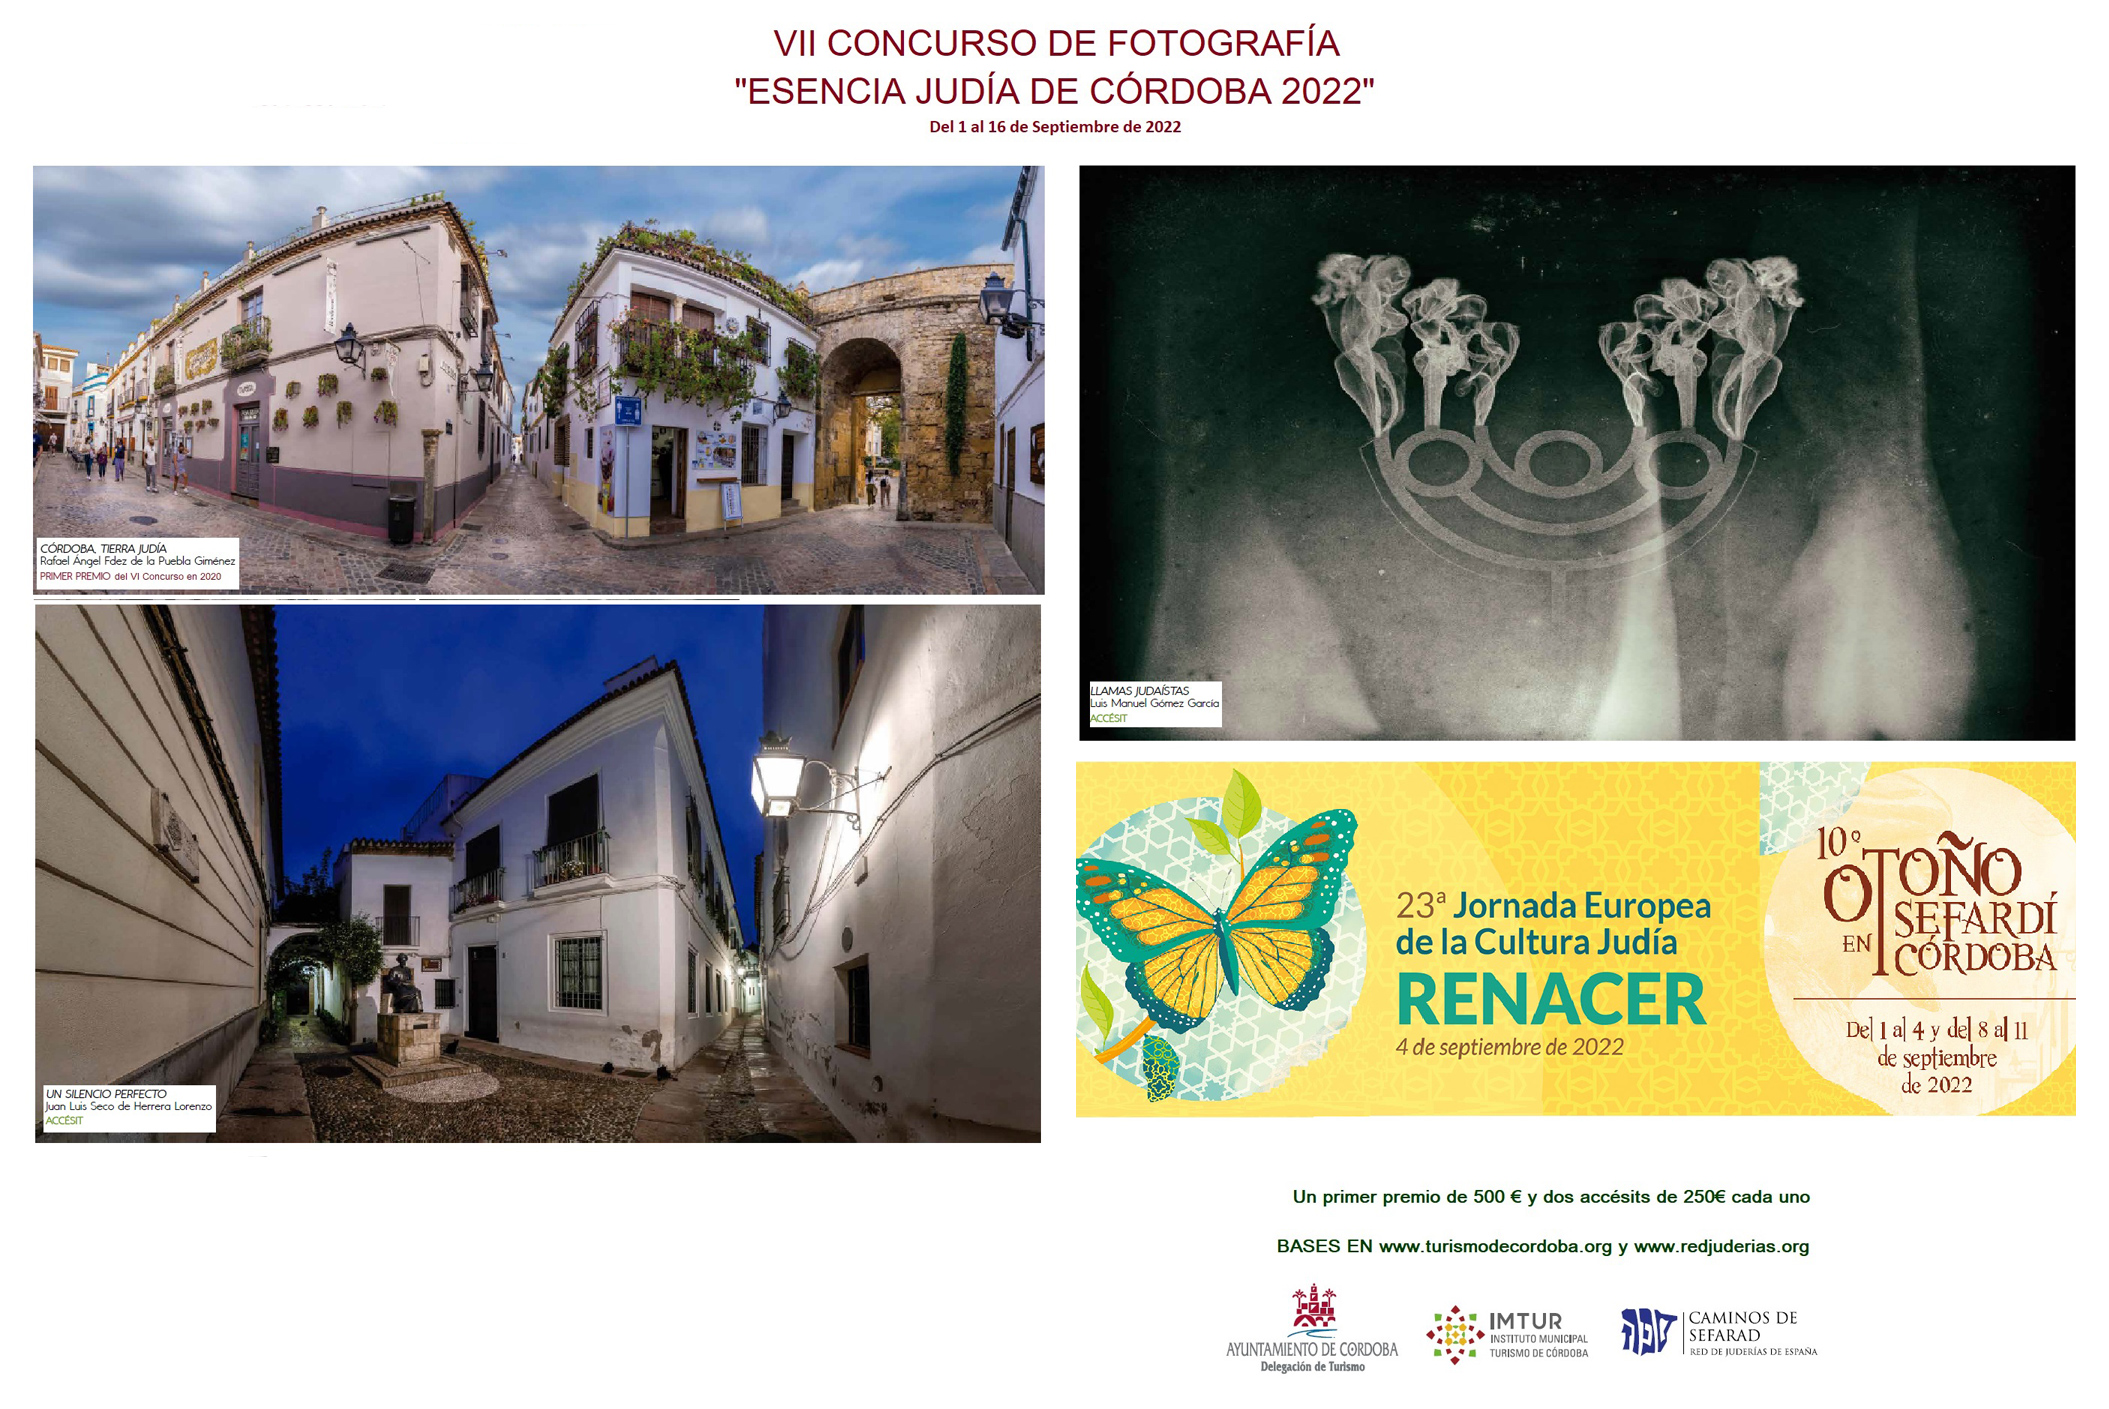 Concurso de Fotografía “Esencia Judía de Córdoba 2022”